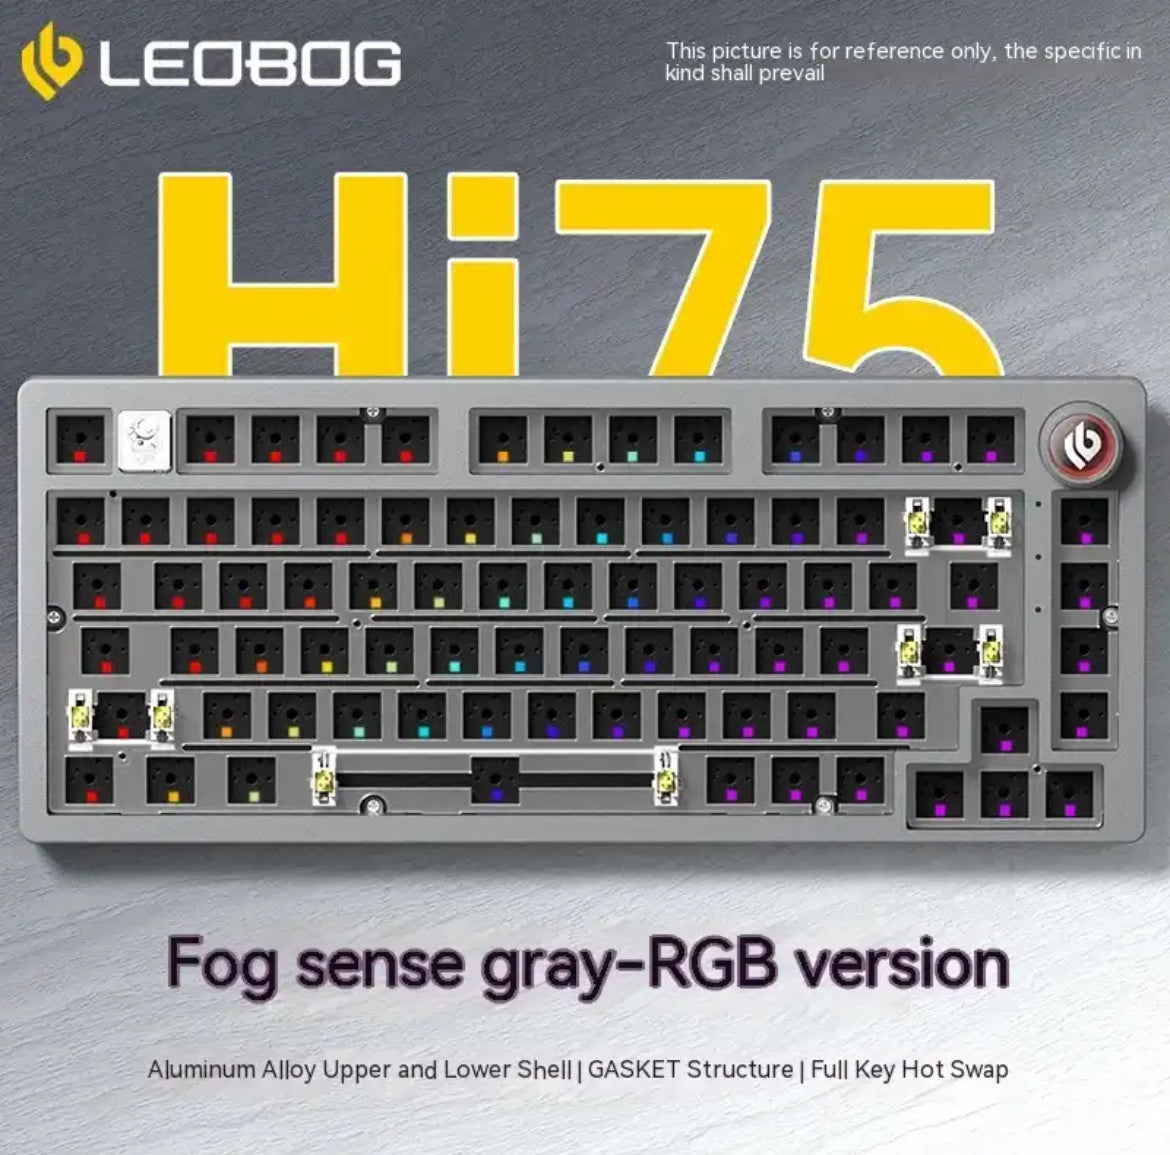 طقم لوحة مفاتيح سلكية من سبائك الألومنيوم LEOBOG Hi75 Rgb 